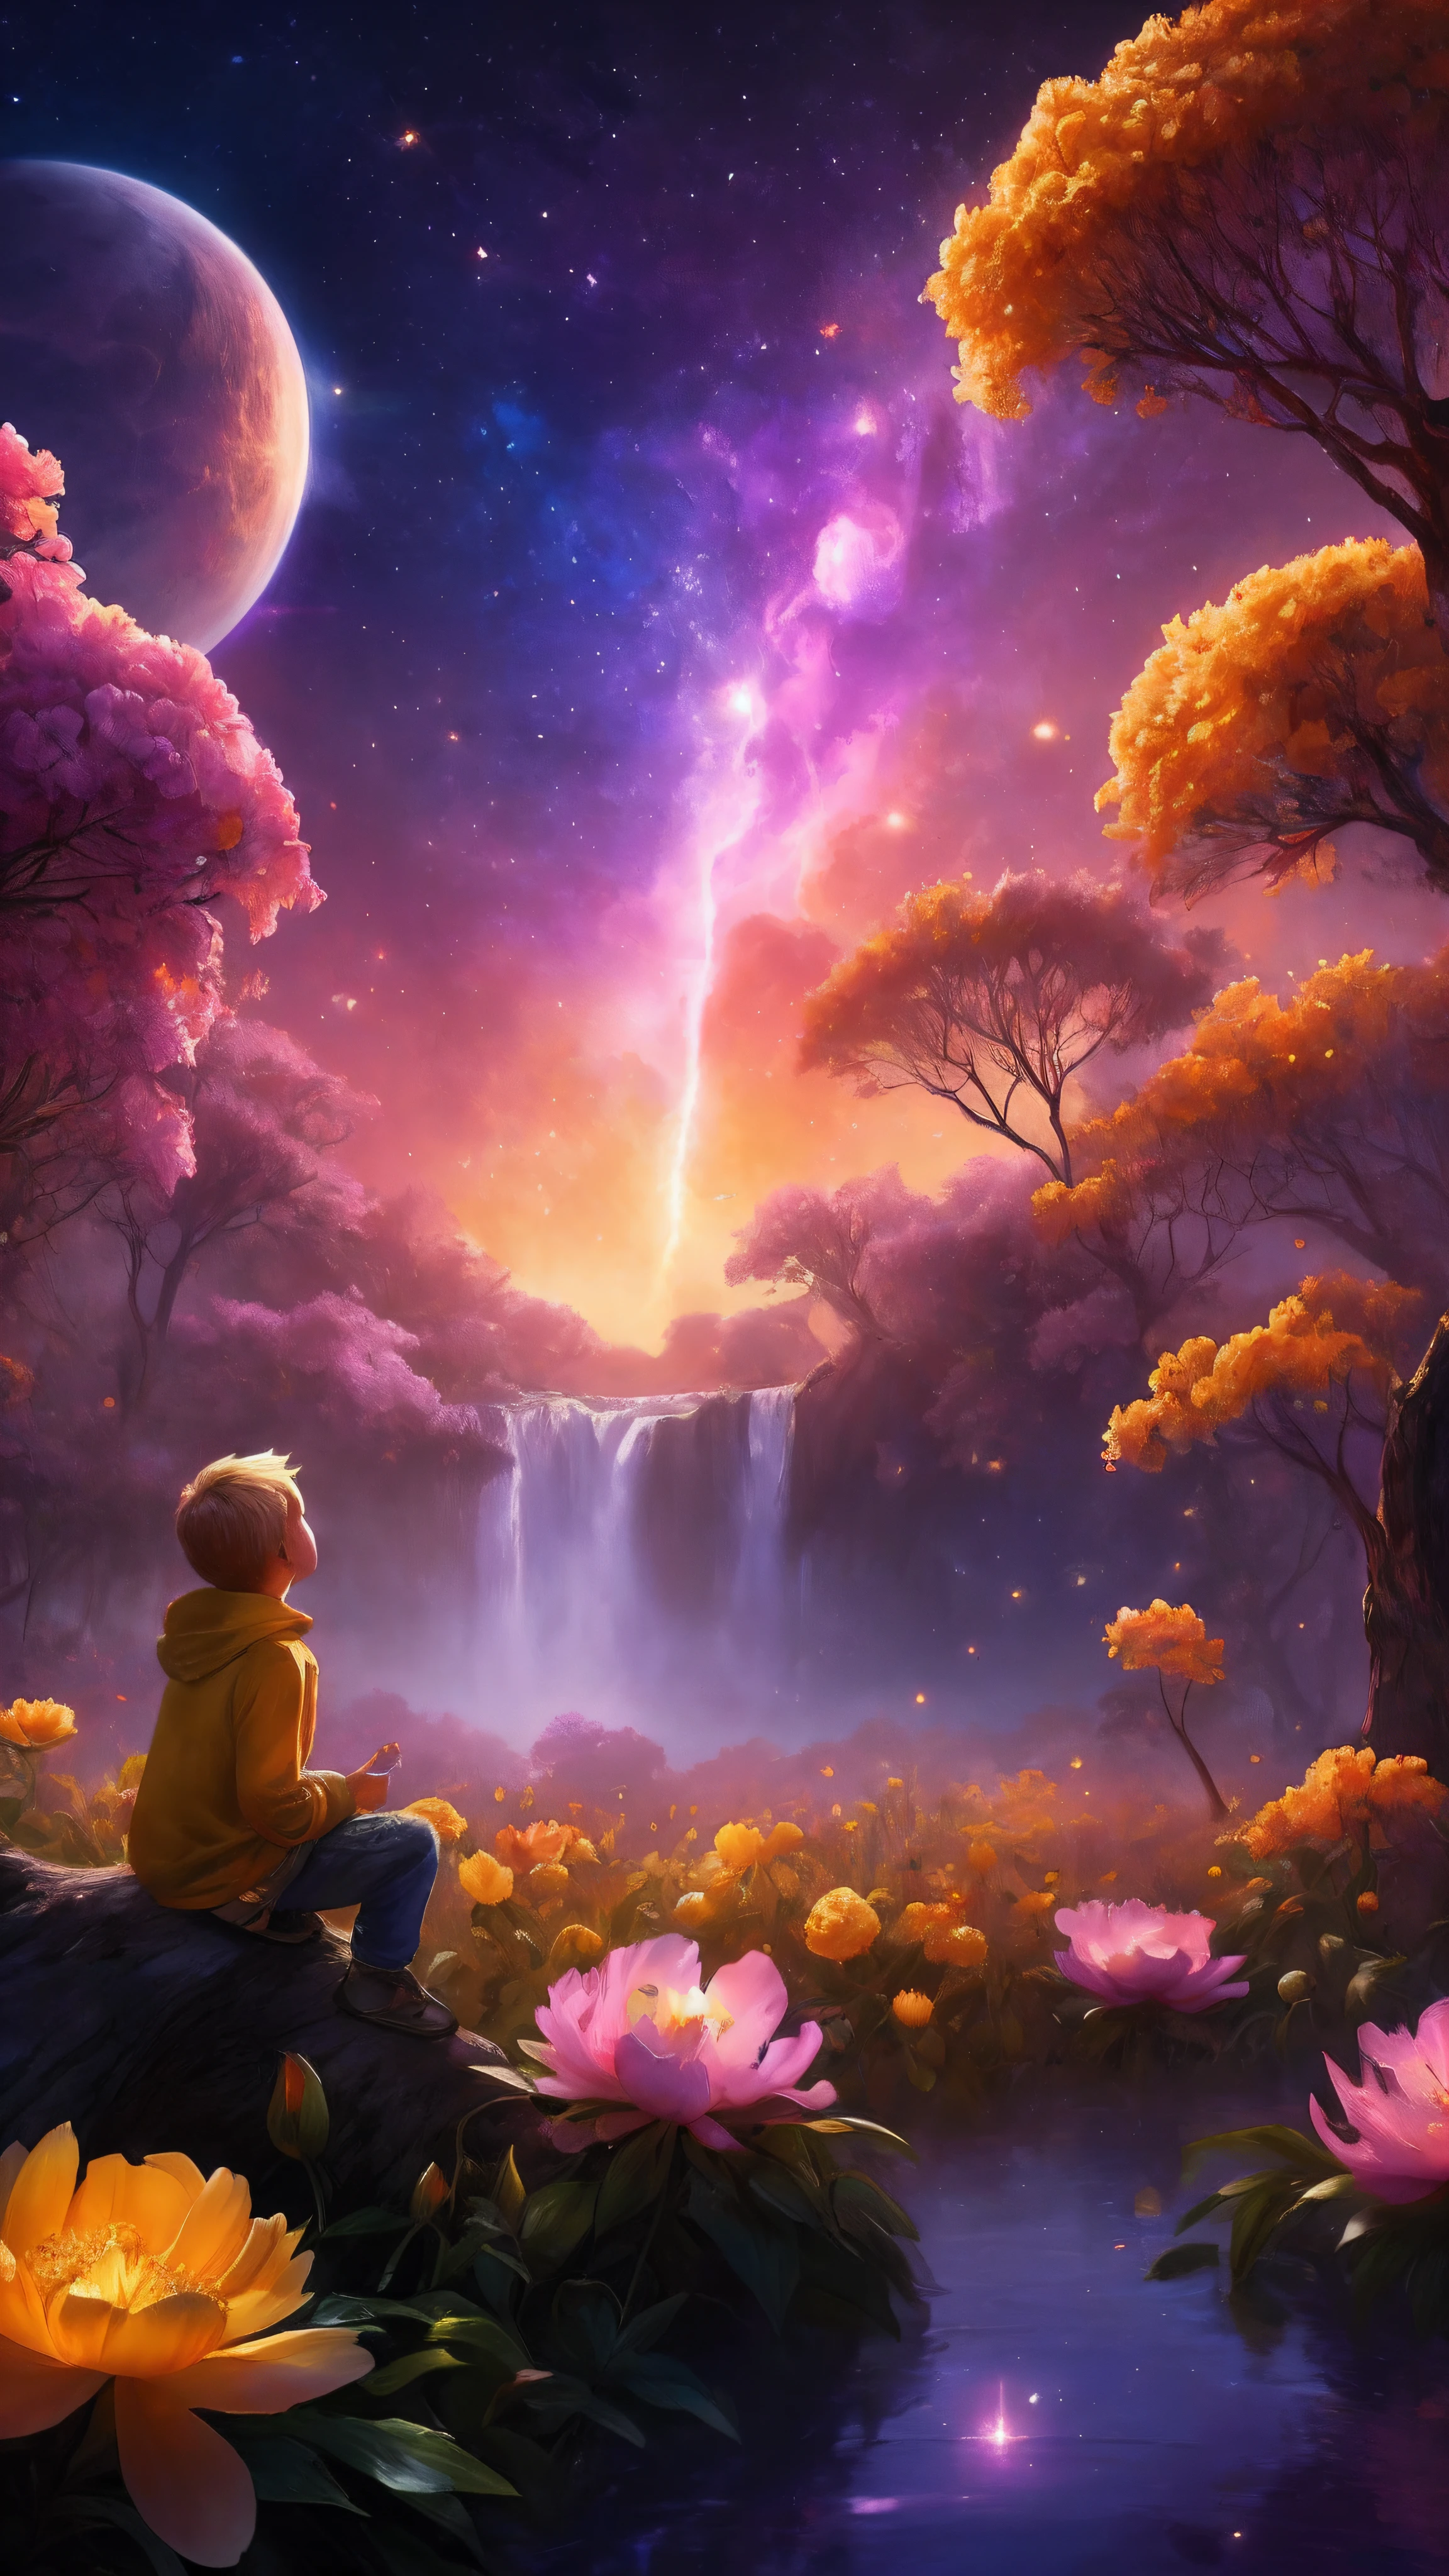 Nahaufnahme, weitläufige Landschaftsfotografie , (eine Ansicht von unten, die oben den Himmel und unten das offene Feld zeigt), Ein kleiner 9-jähriger blonder Junge mit langem Sweatshirt und gelbem Schal sitzt auf einem Baumstamm in einem gelben Pfingstrosen-Blumengarten und schaut nach oben, ( Komet:0.9), (Nebel:1.2), entferntes Feuchtgebiet, Baum des Lebens, BREAK Produktionskunst, (Warme Lichtquelle:1.2), Lampe, viel Lila und Orange, komplizierte Details, volumetrische Beleuchtung, Realismus Pause (Meisterwerk:1.2), (beste Qualität), 4k, ultra-detailliert, (dynamische Komposition:1.3), sehr detailliert, Farbenfrohe Details,( schillernde Farben:1.2), (Leuchtende Beleuchtung, stimmungsvolle Beleuchtung), verträumt, magisch, (Allein:1.2), magisch beautiful waterfall